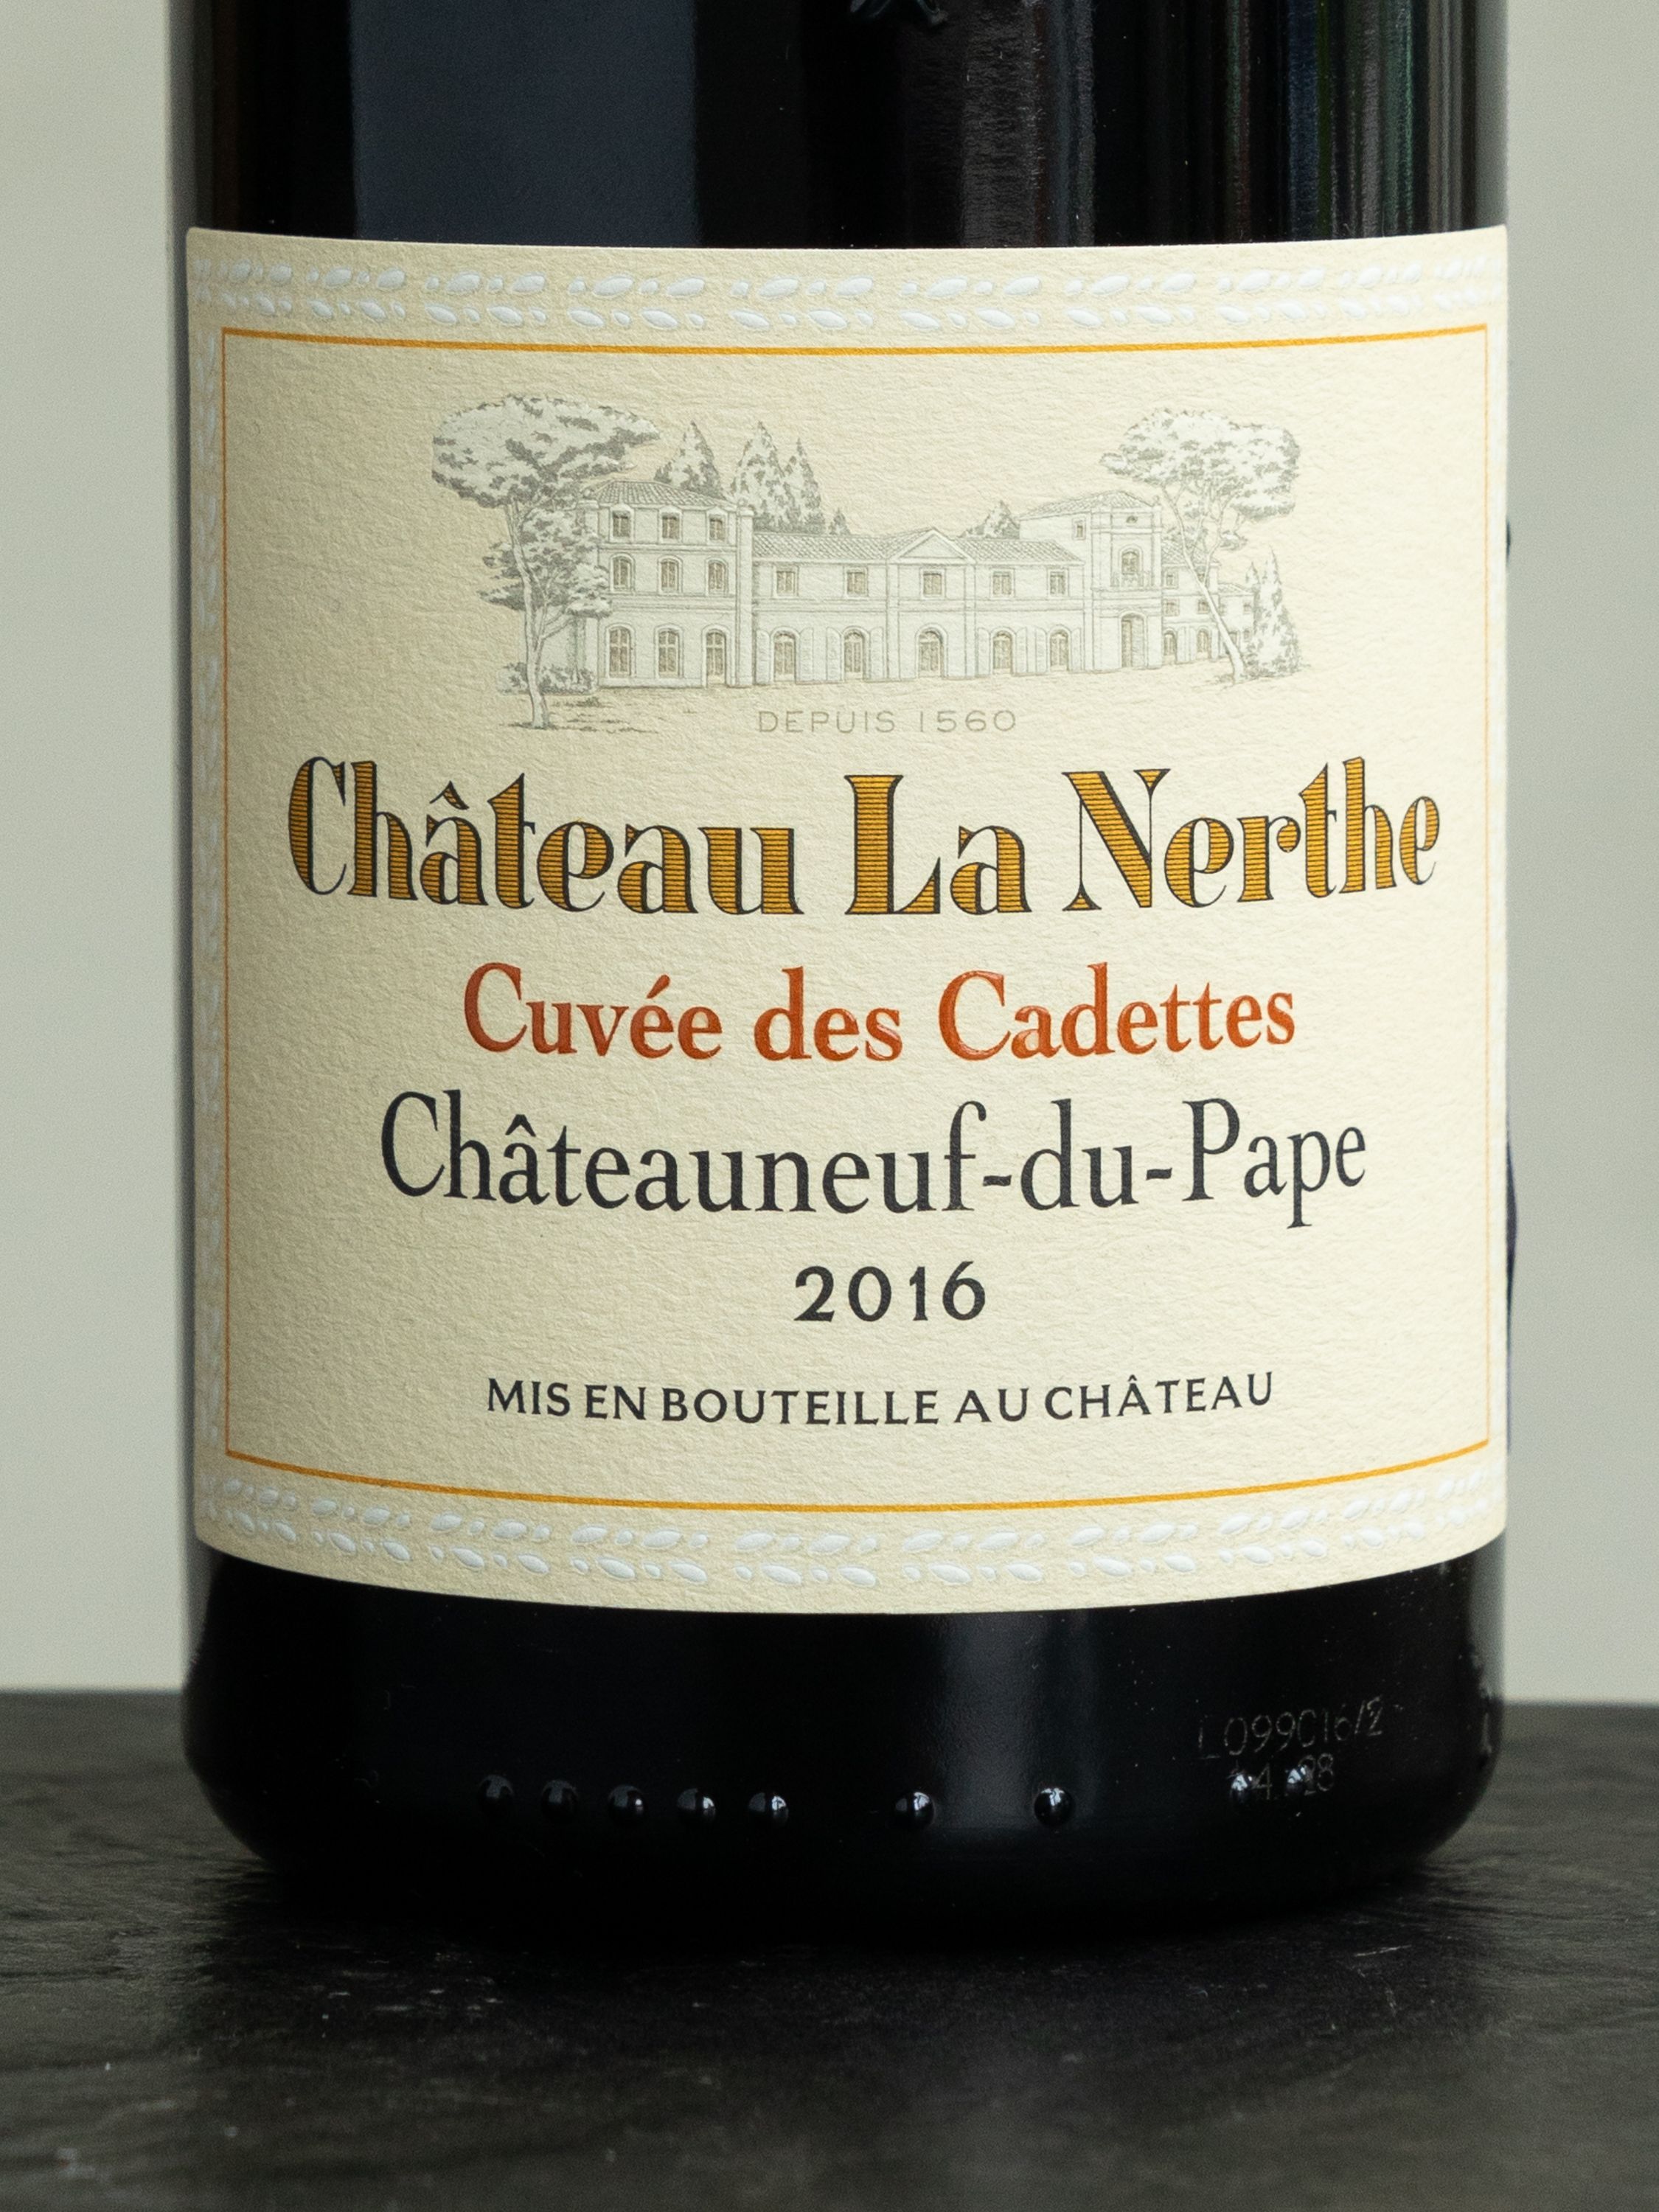 Вино Chateau la Nerthe Cuvee des Cadettes Chateauneuf-du-Pape / Шато ля Нерт Шатонеф-дю-Пап Кюве де Кадетт